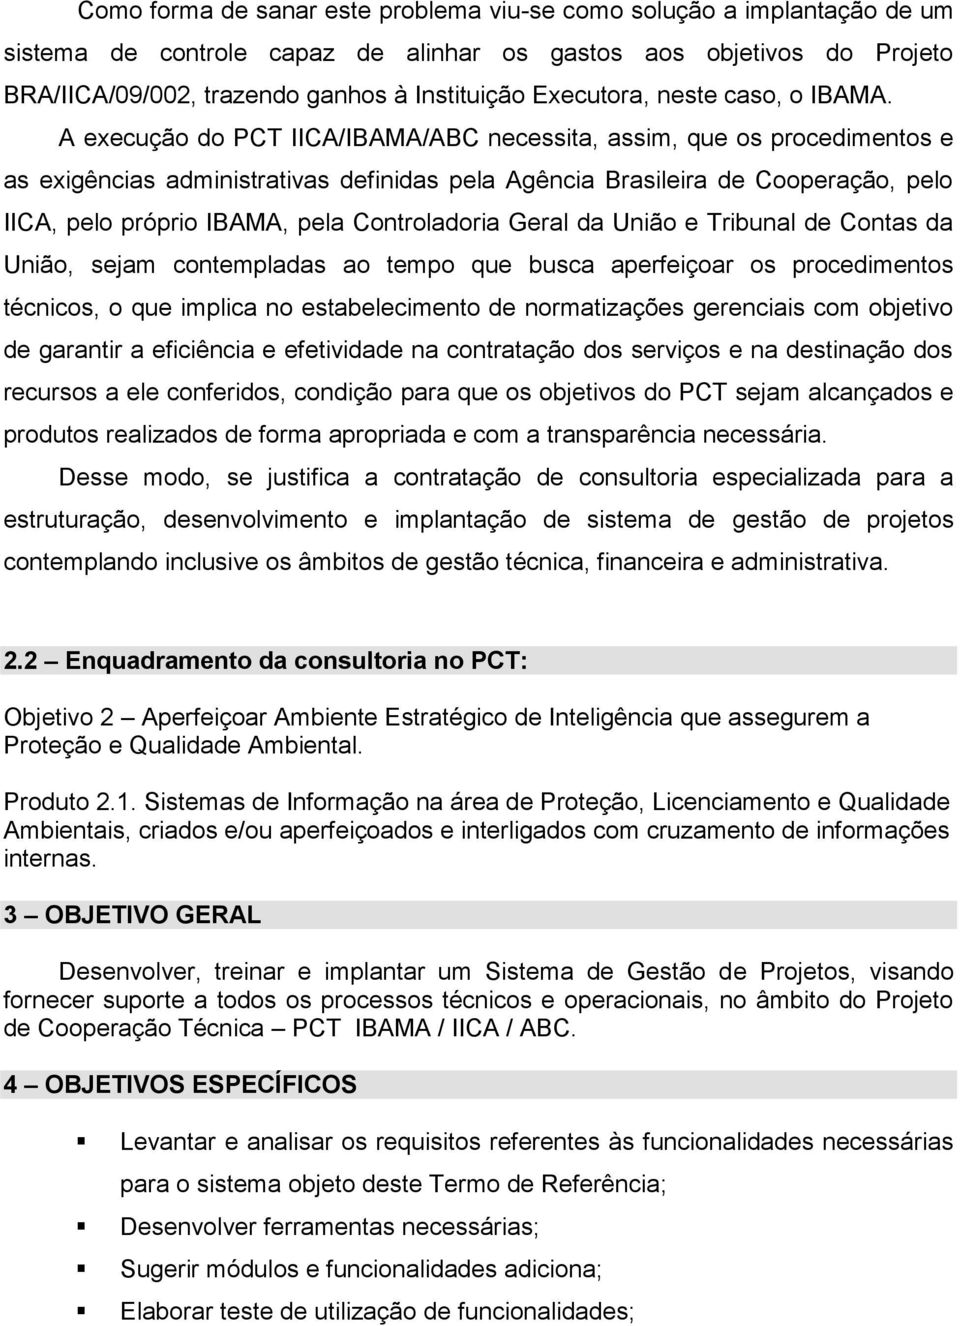 A execução do PCT IICA/IBAMA/ABC necessita, assim, que os procedimentos e as exigências administrativas definidas pela Agência Brasileira de Cooperação, pelo IICA, pelo próprio IBAMA, pela